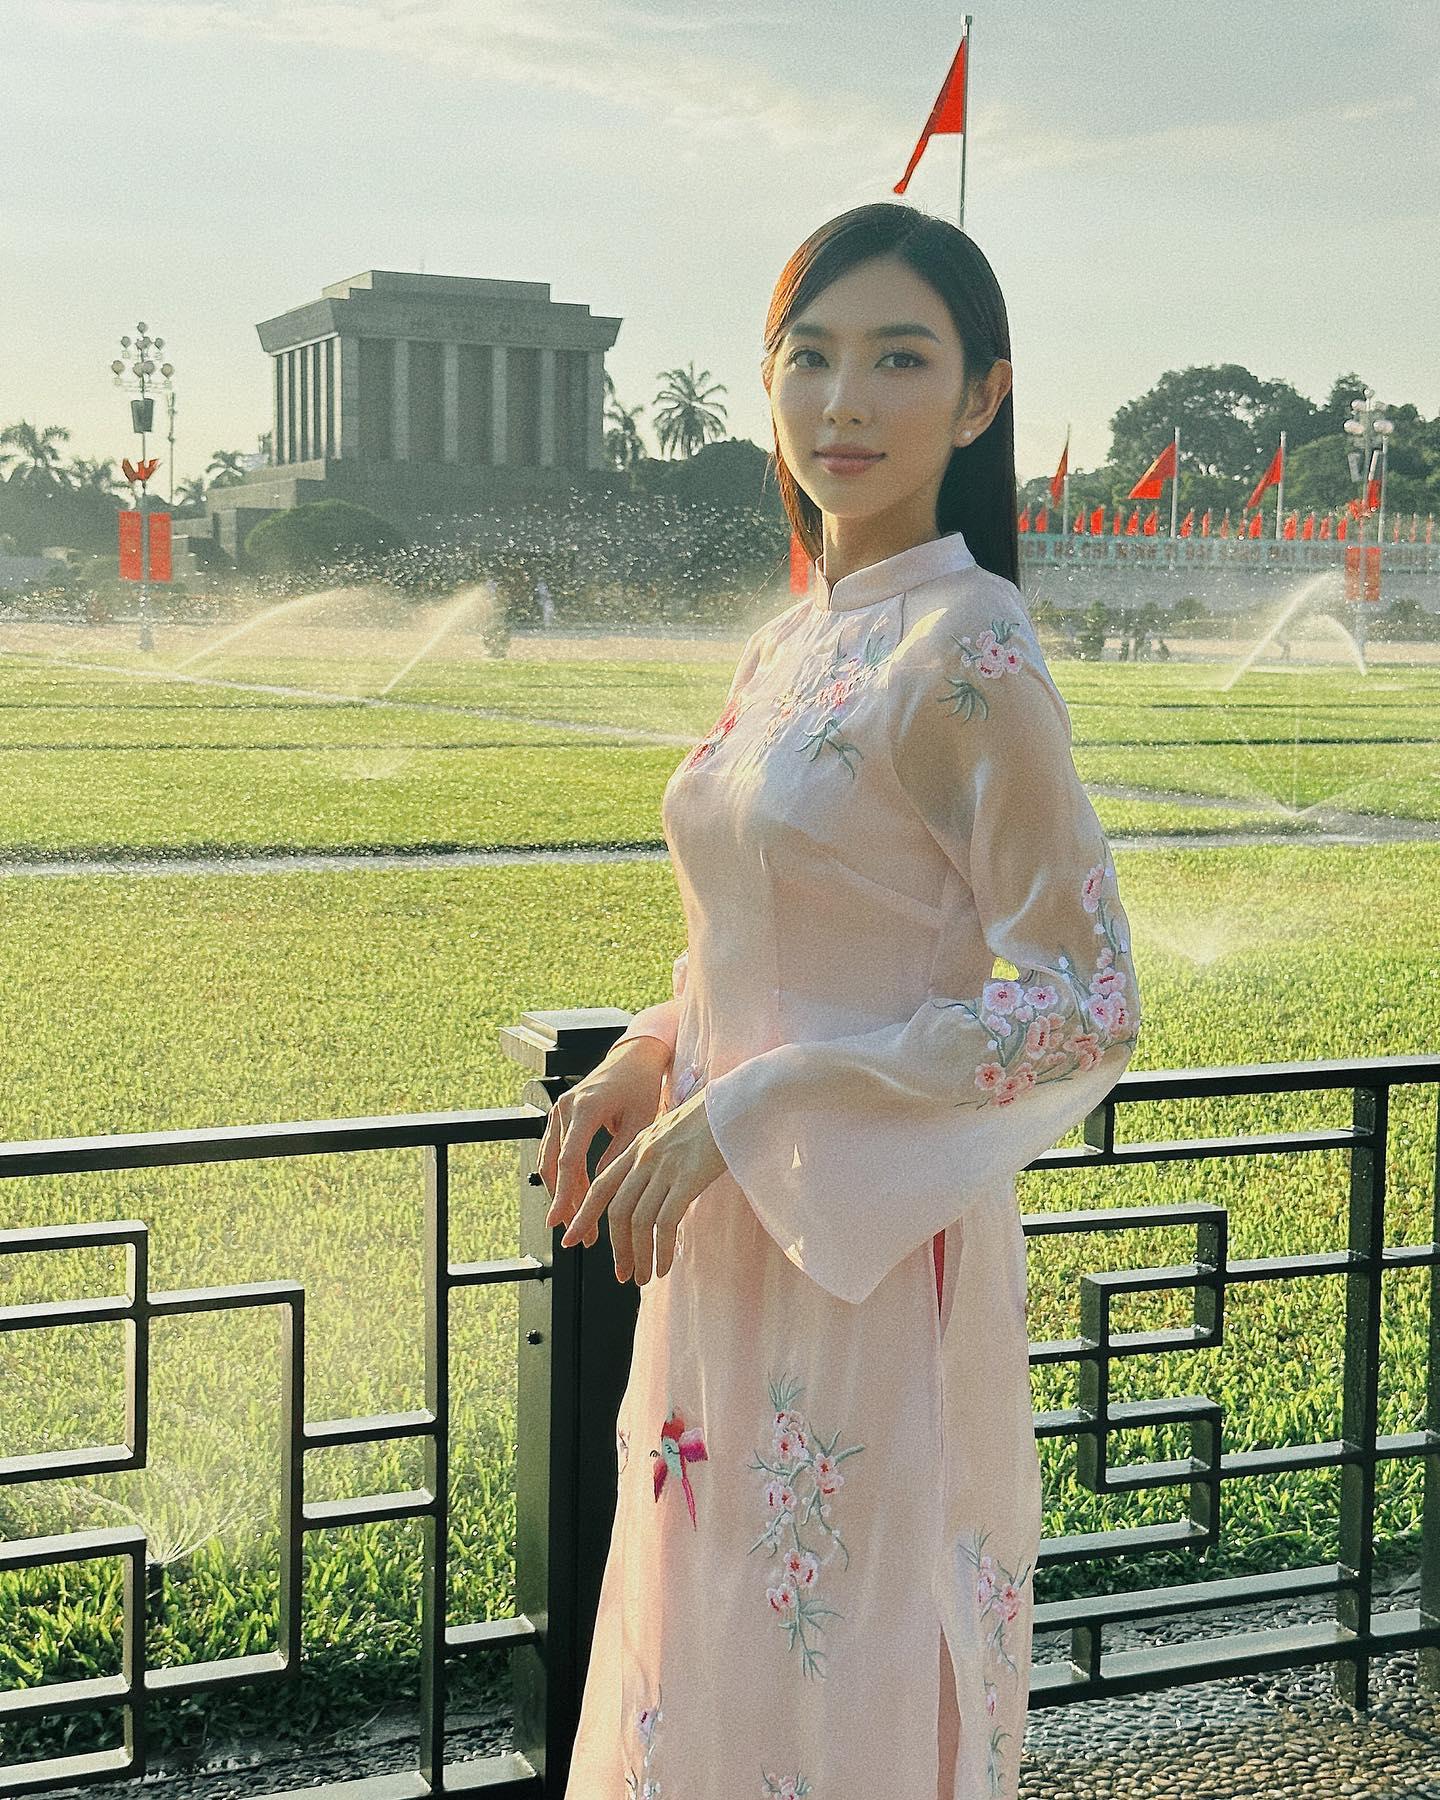 Hoa hậu Thùy Tiên hỗ trợ 25 nạn nhân cháy chung cư nhưng vẫn bị anti fan tìm cớ mỉa mai 1 điều - ảnh 5